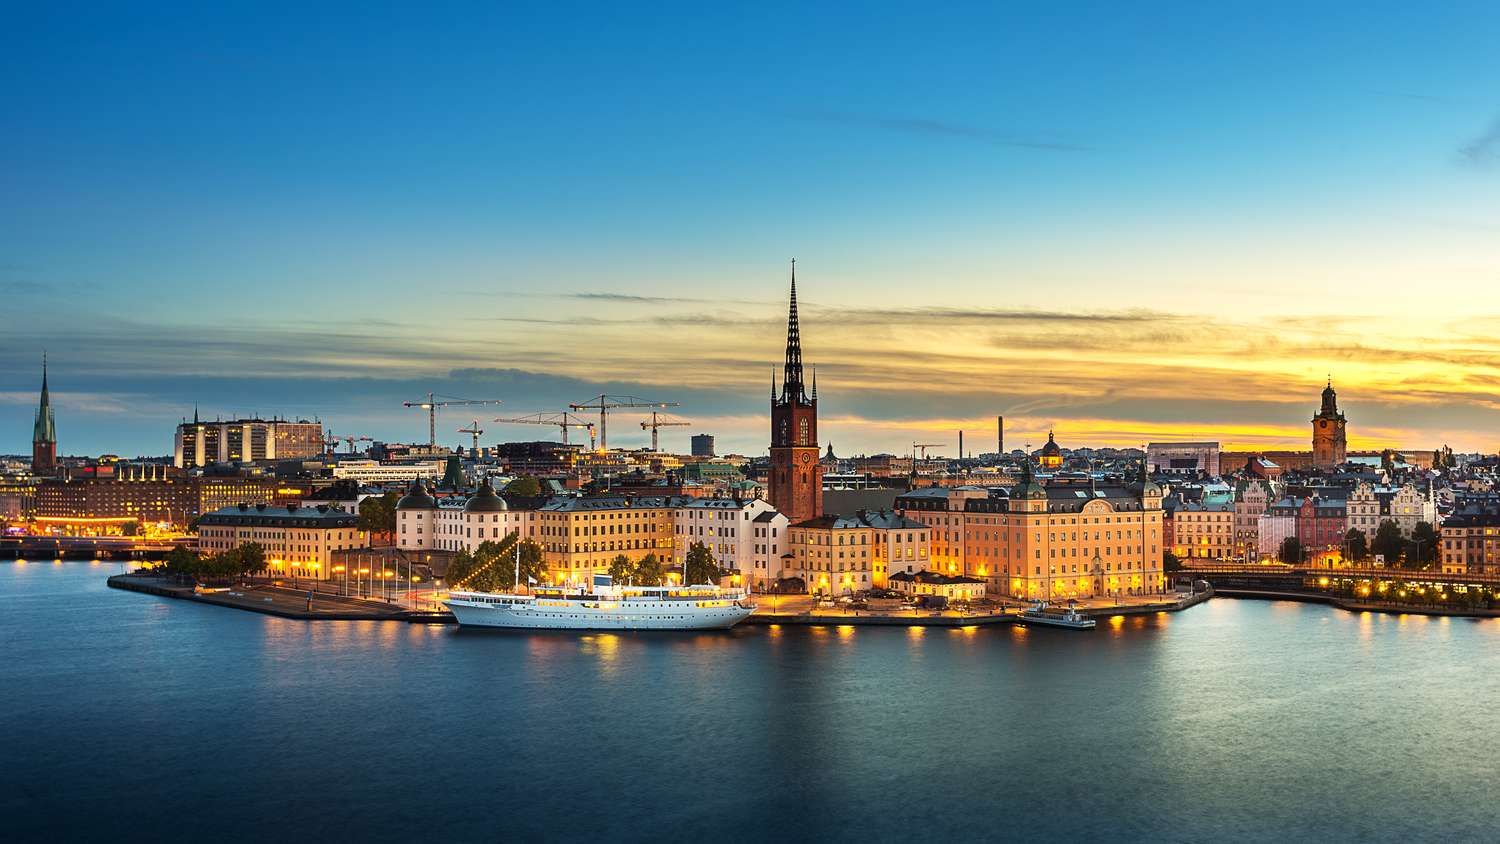 สวีเดนลุยโครงการพัฒนาดิจิทัลแห่งชาติ มุ่งสู่เป้าหมายประเทศผู้นำนวัตกรรม